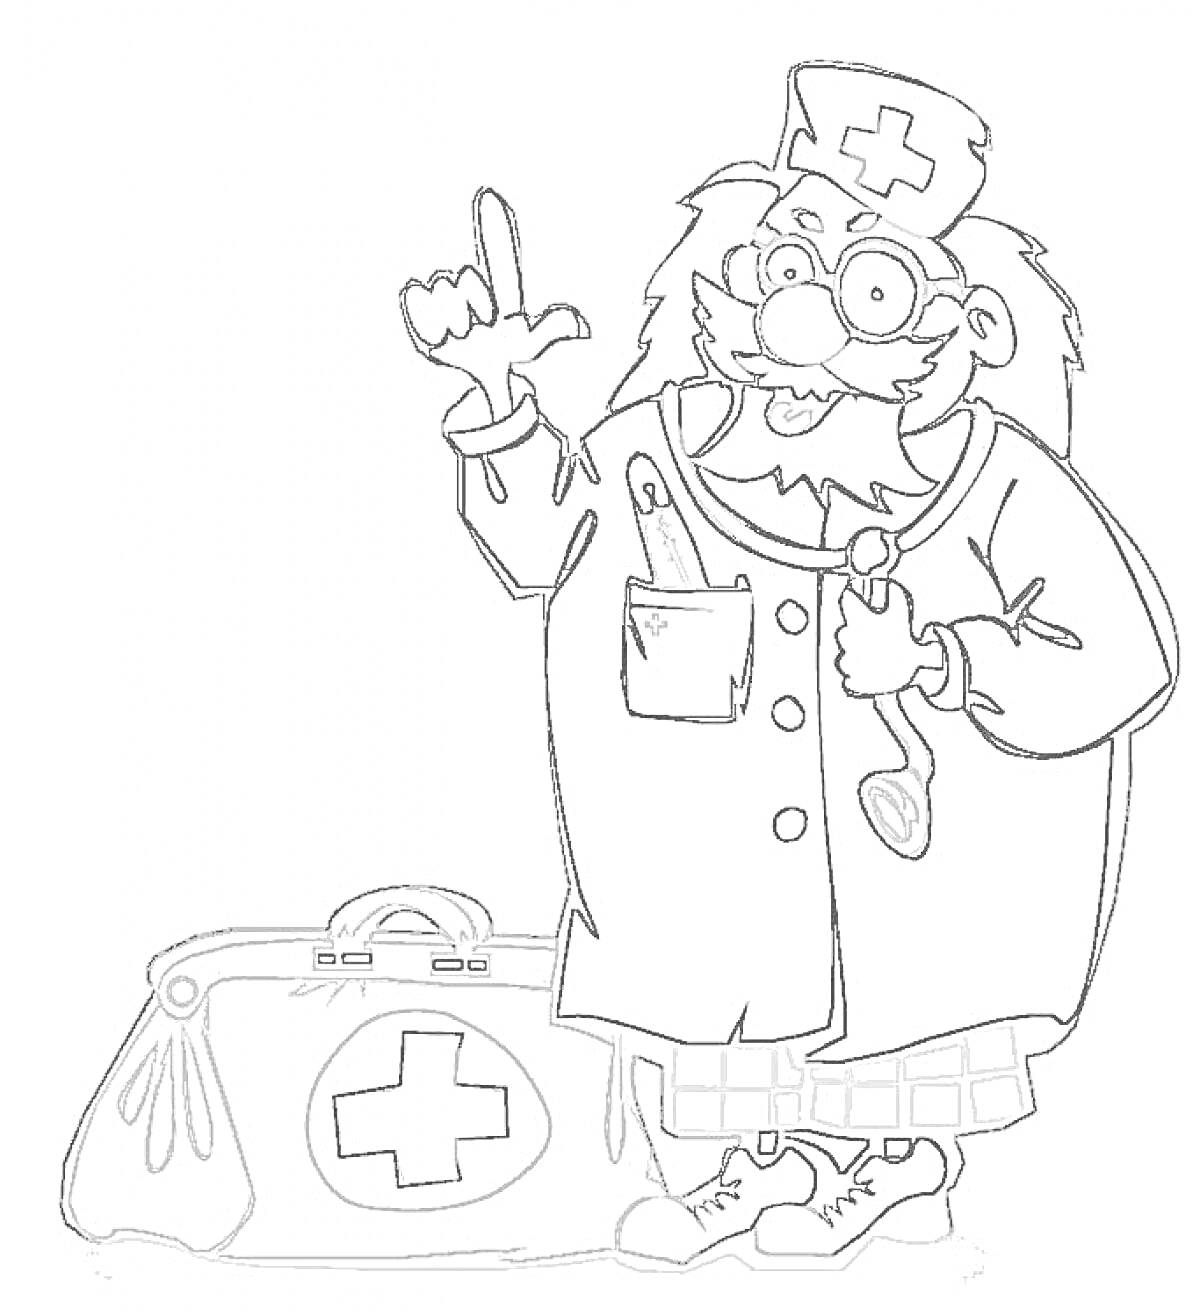 Доктор Айболит с медицинской сумкой и стетоскопом, одетый в халат и шапку с крестом